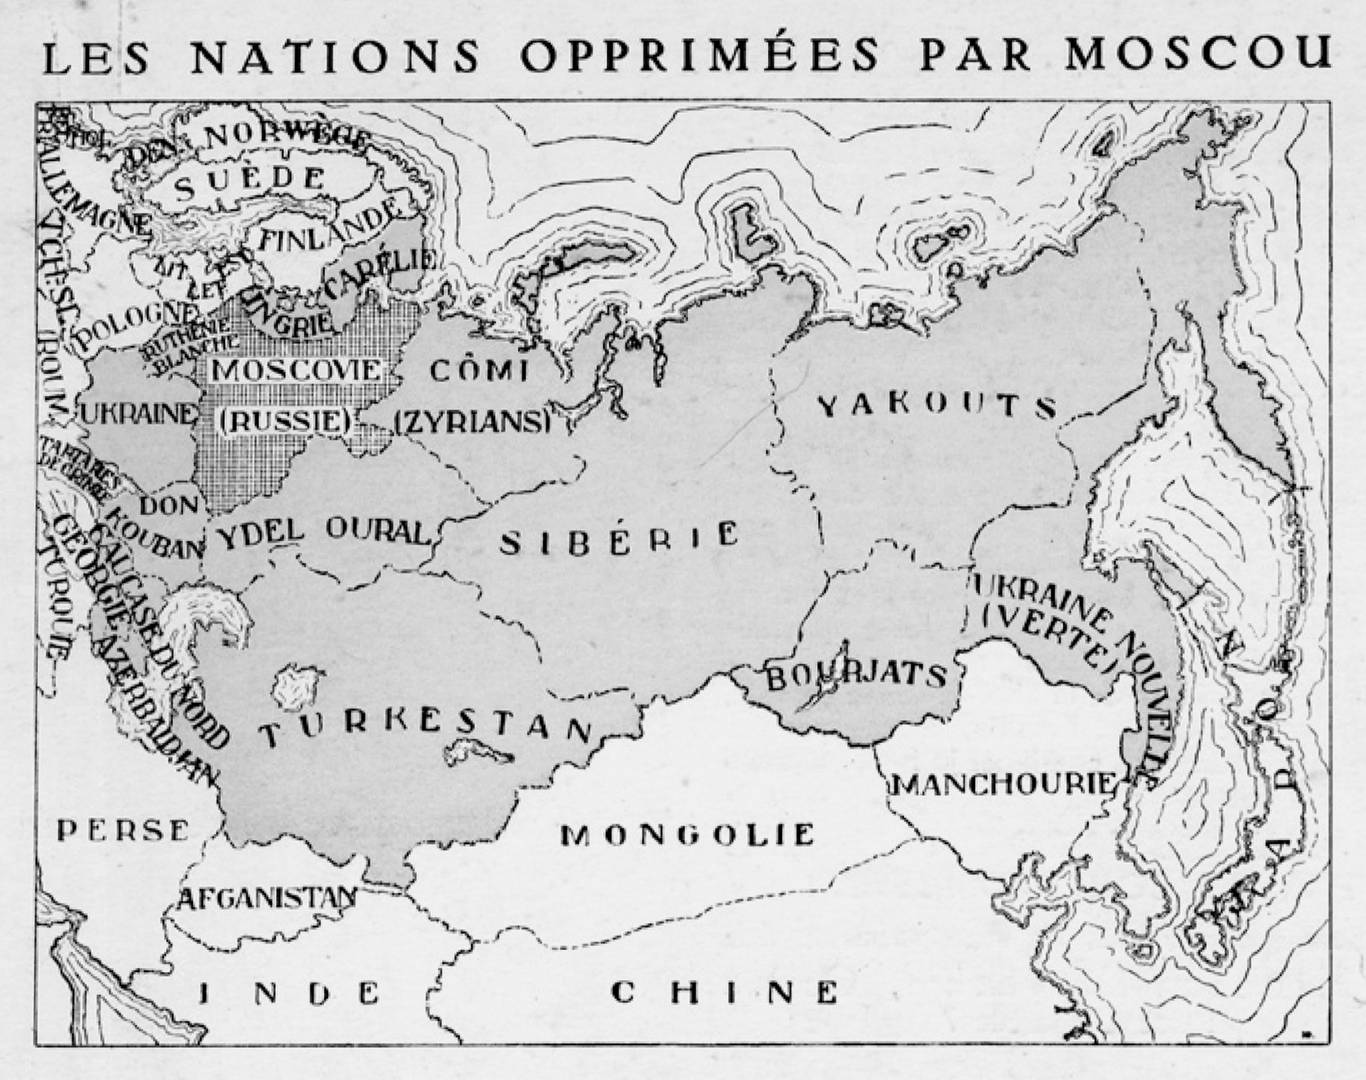 Открытка с картой прометеистской «Лиги угнетенных народов»: «Народы, угнетенные Москвой» («Ligue des Nations opprimées par Moscou»)